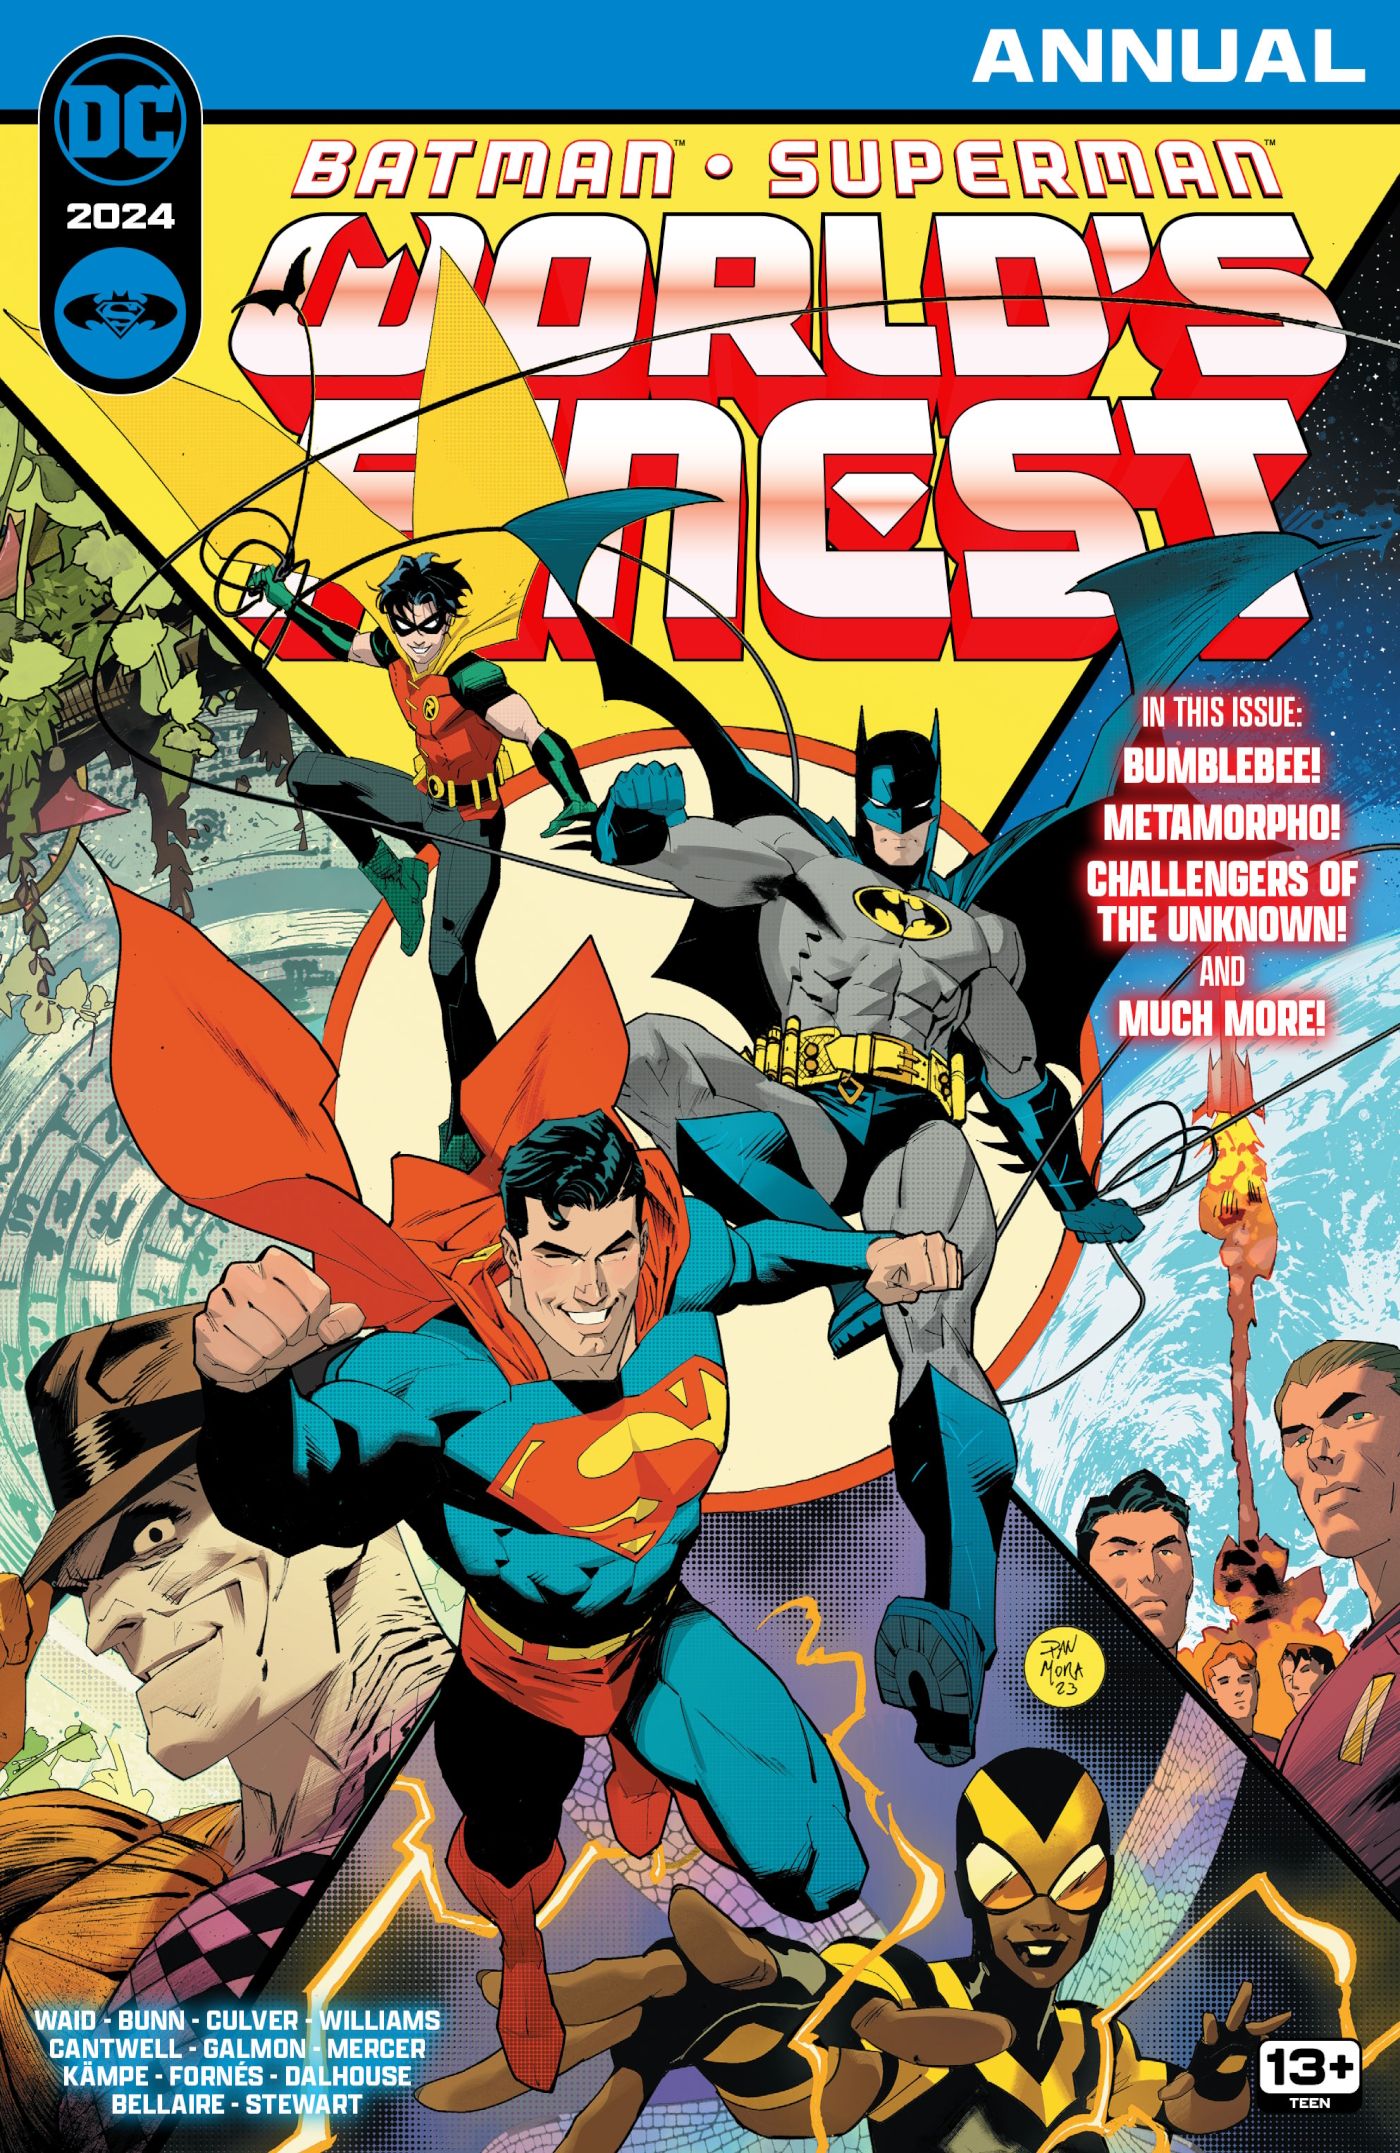 Couverture principale annuelle 2024 de Batman Superman World's Finest : Batman et Superman au centre d'une couverture mettant en vedette d'autres super-héros costumés.